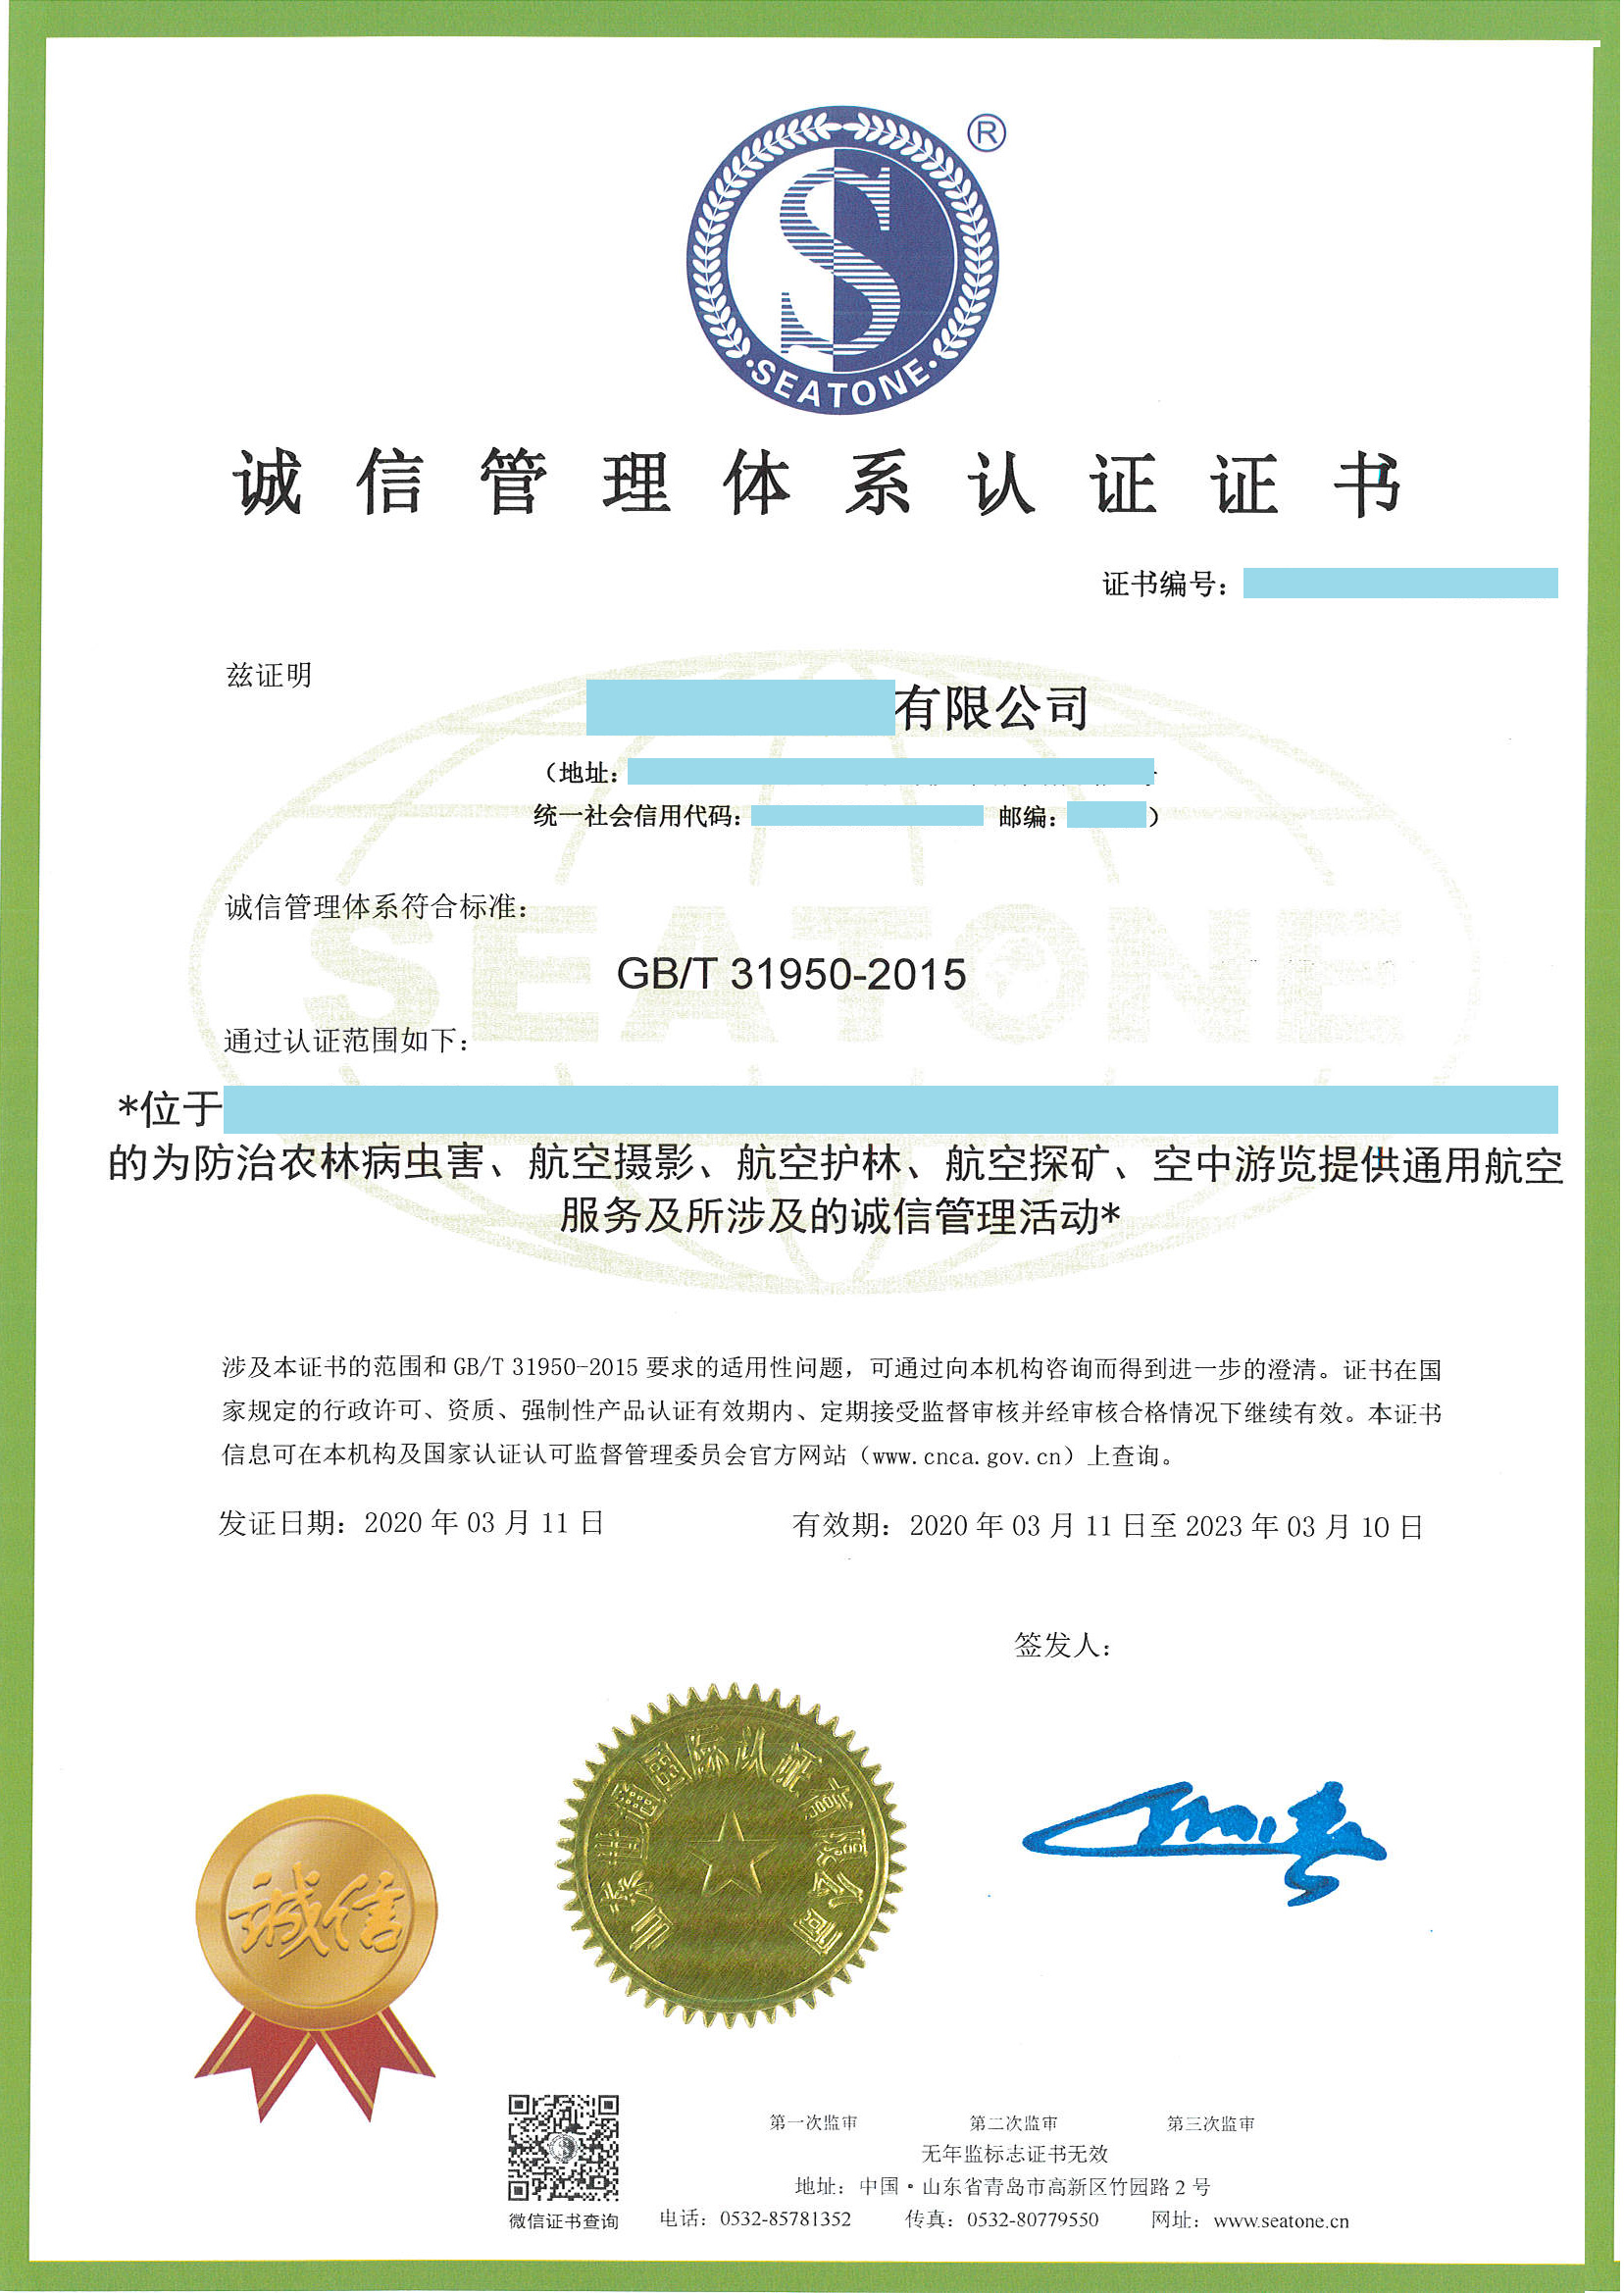 滨州ISO9001质量管理体系认证机构